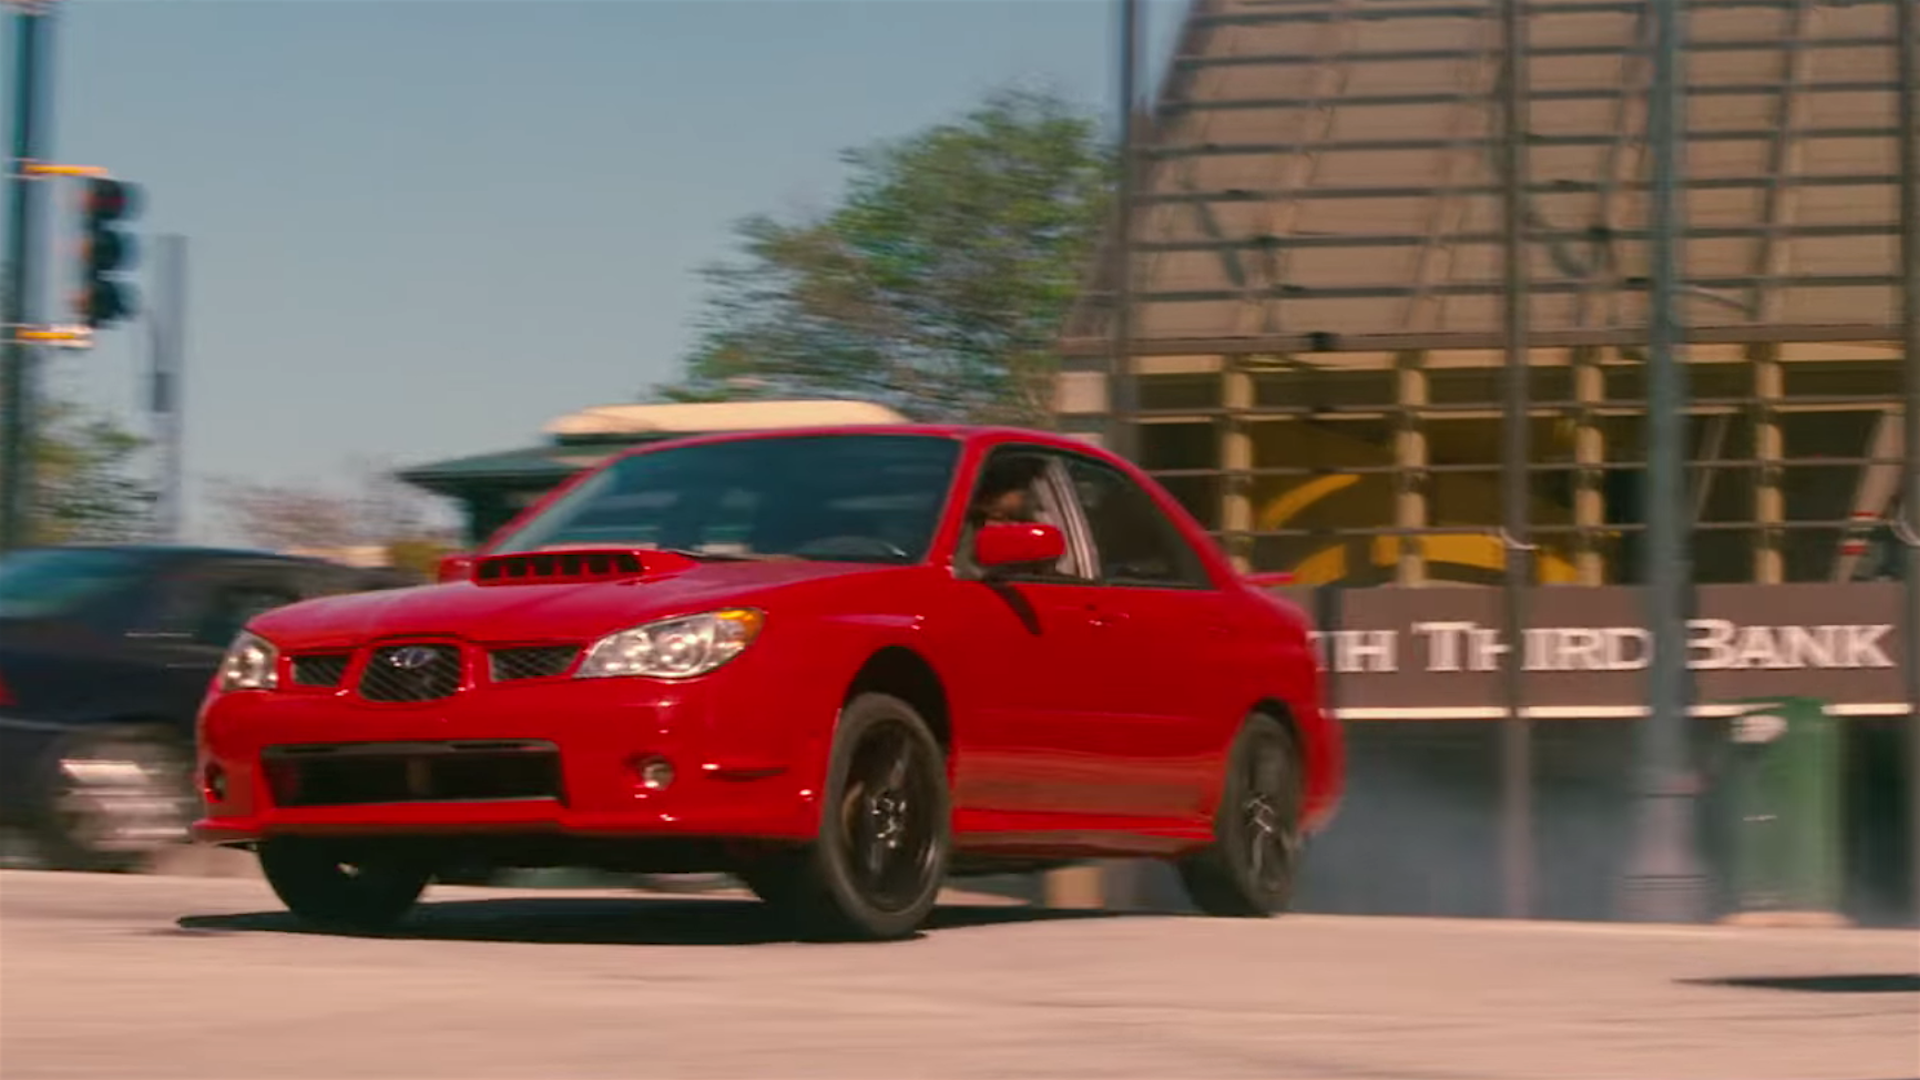 Baby Driver Trailer Shows a Subaru WRX Getting Sideways